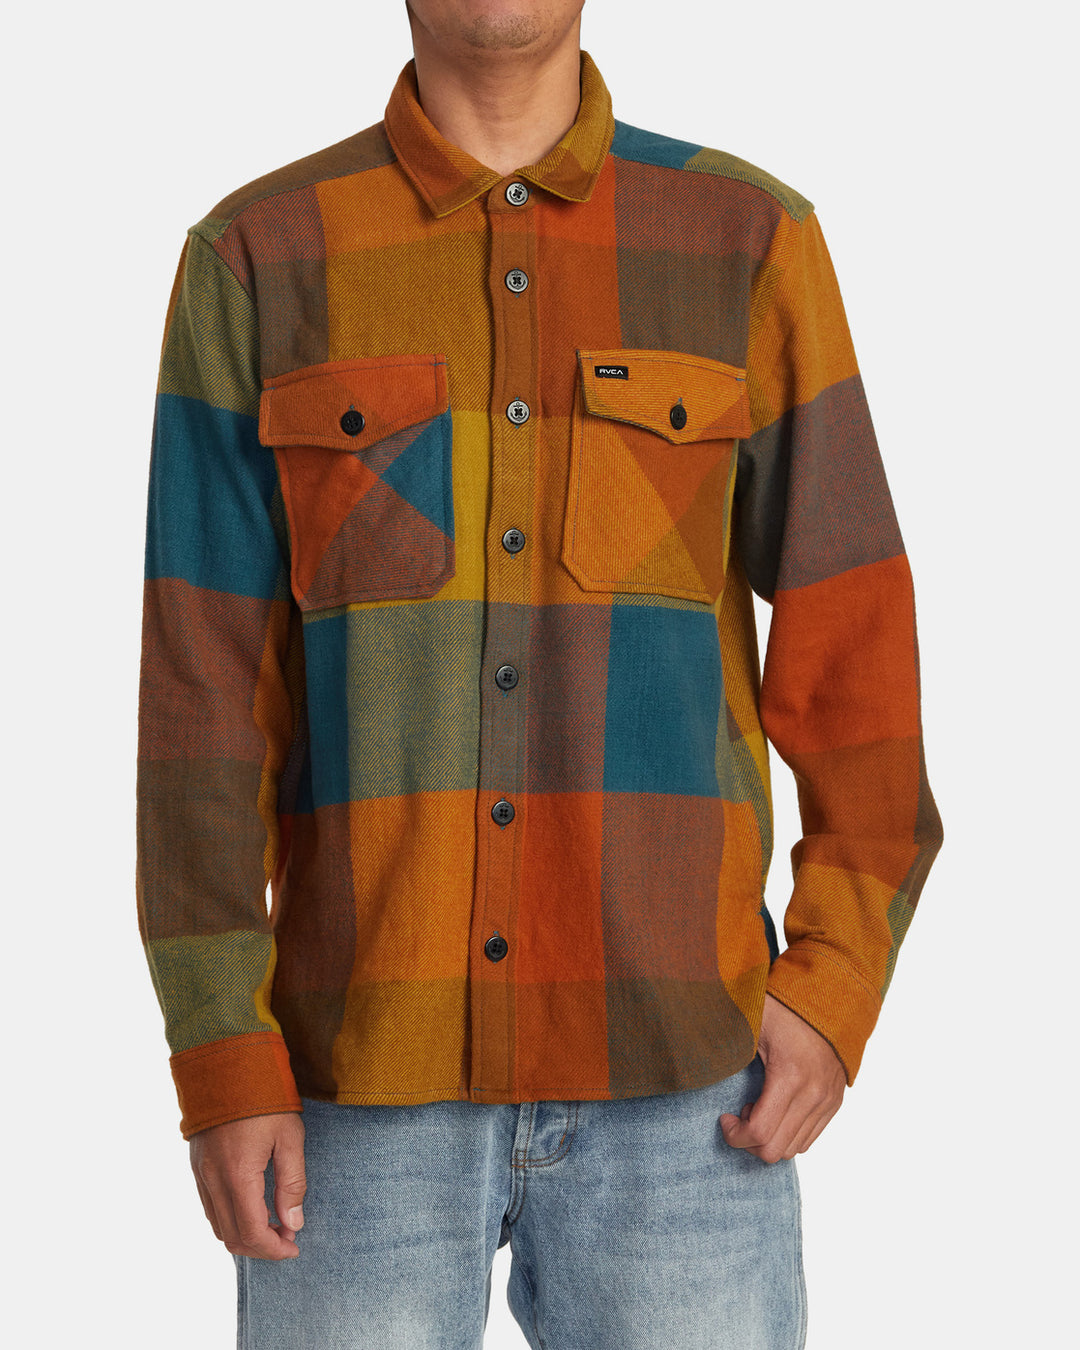 RVCA Va Cpo Flannel Shirt - Multi - Sun Diego Boardshop